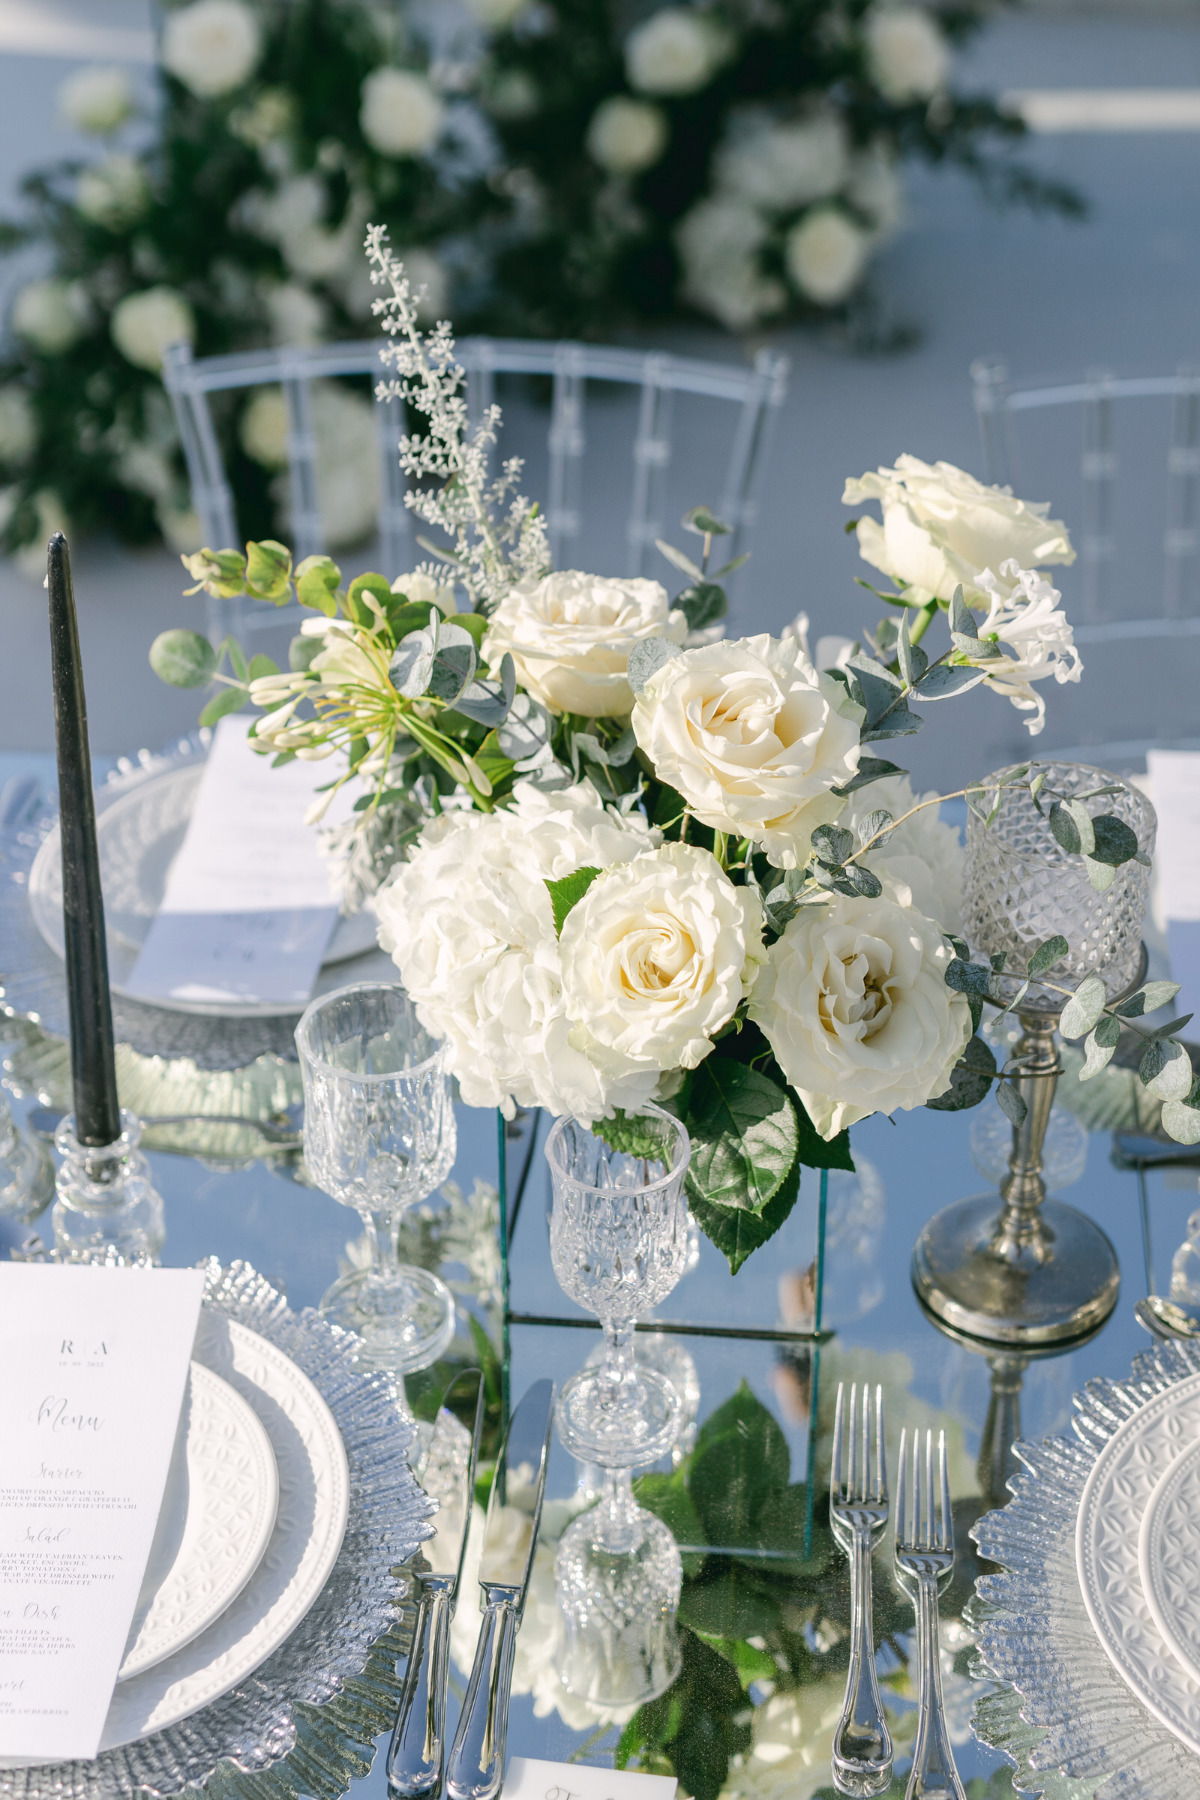 White rose wedding centerpiece